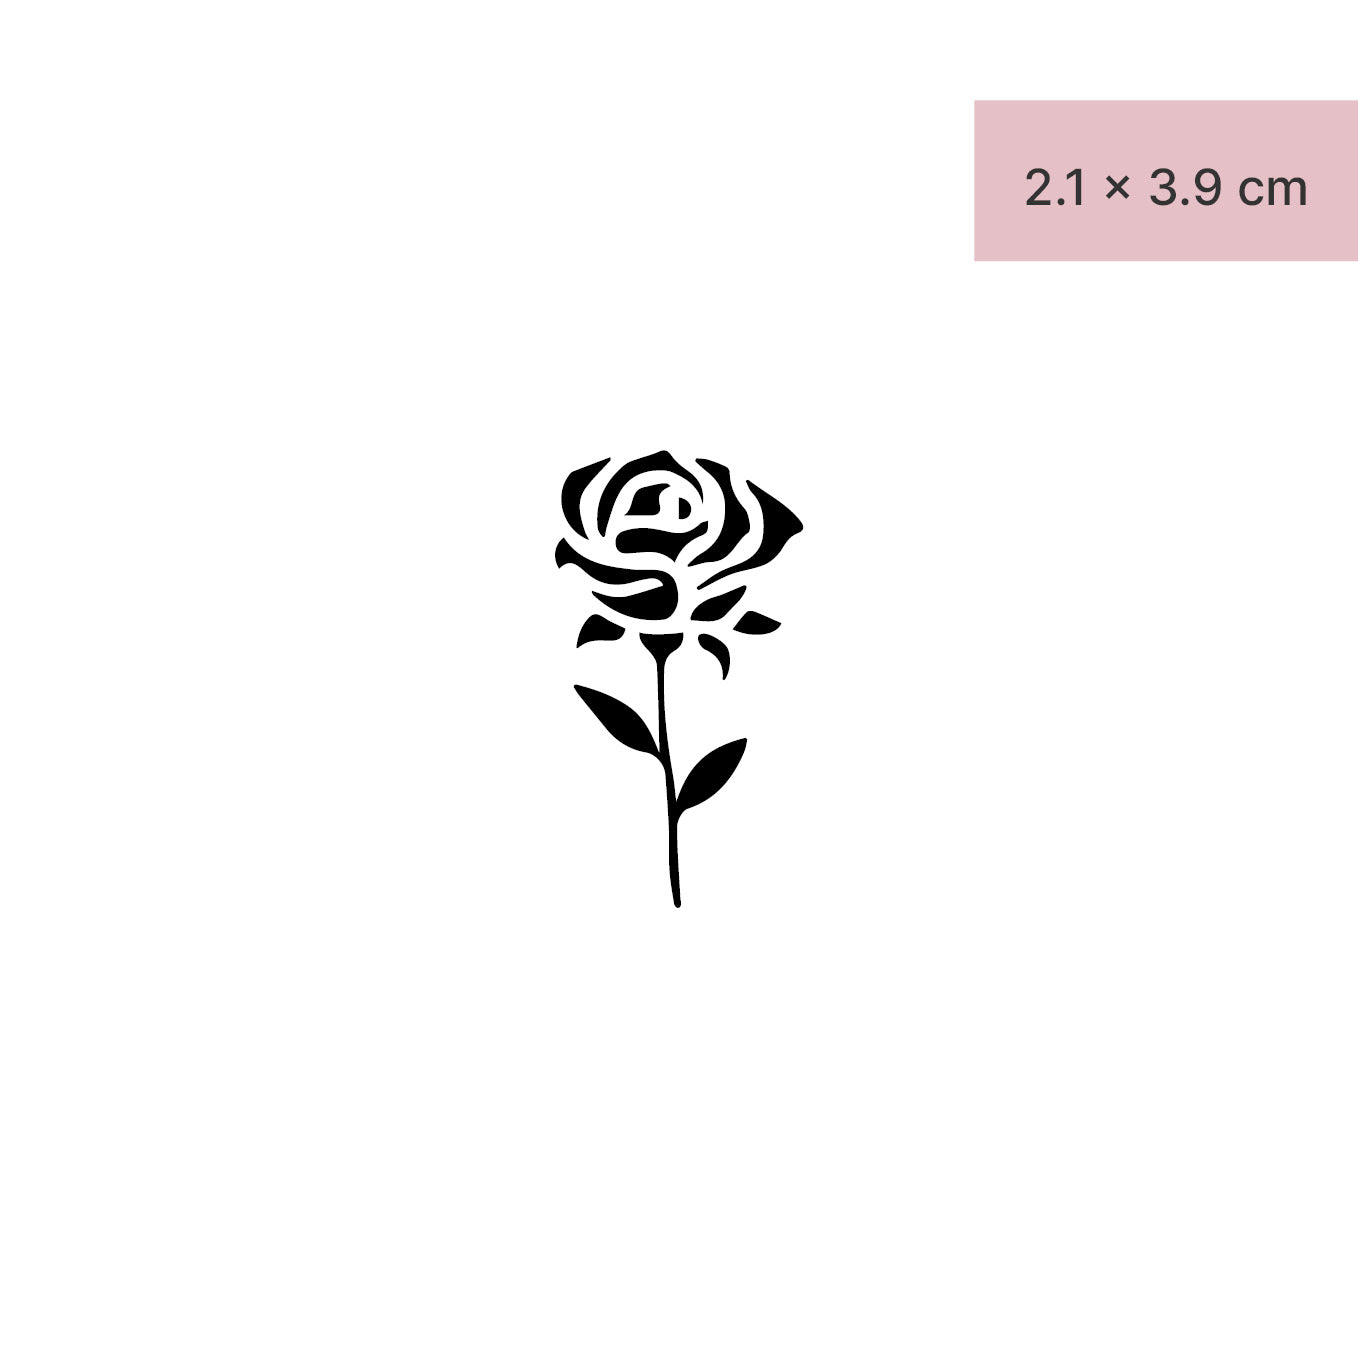 Abstrakte Rose ausgefüllt Tattoo von minink, der Marke für temporäre Tattoos.